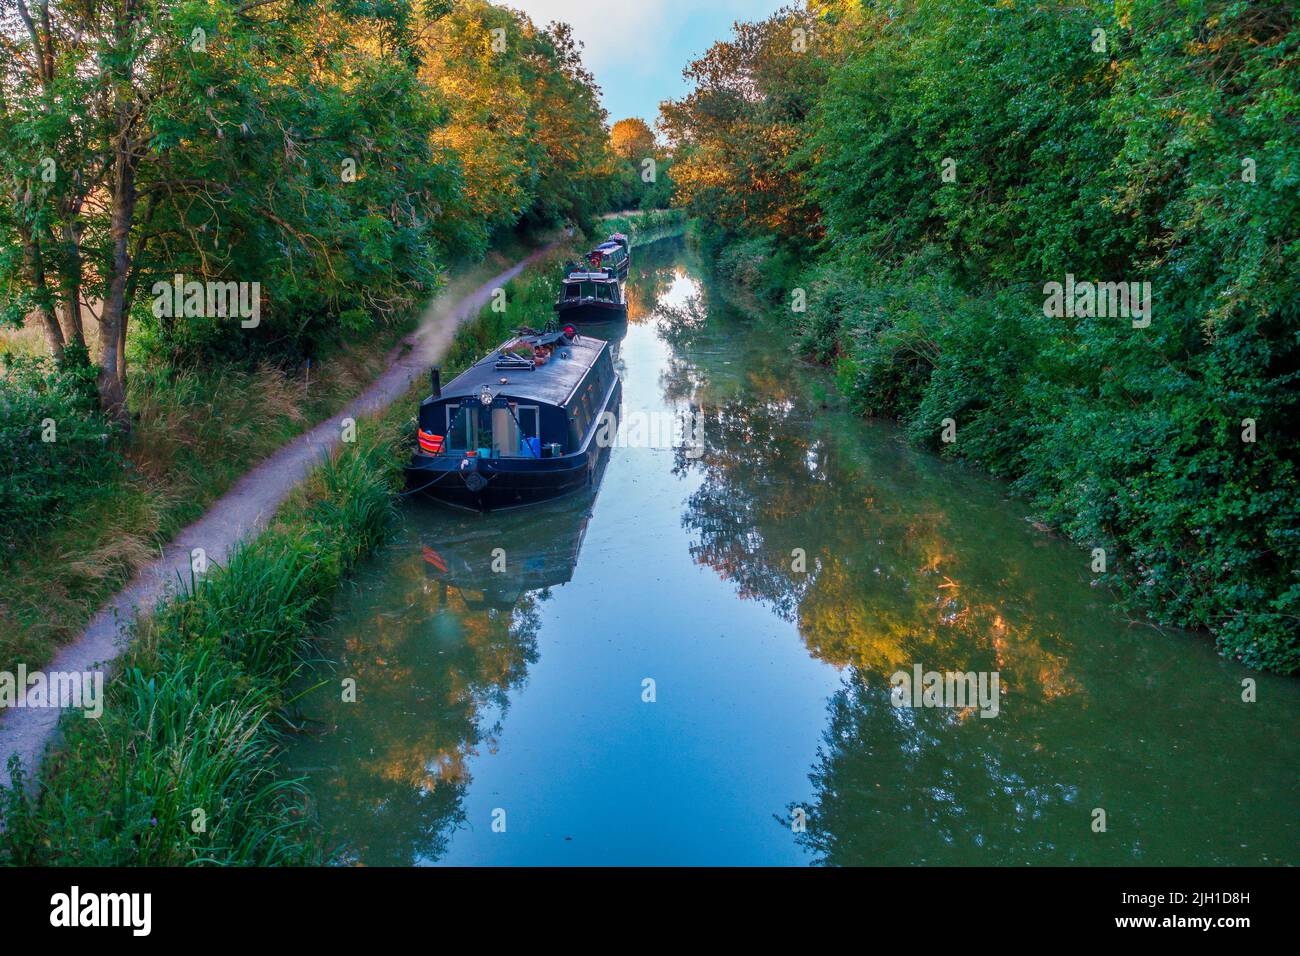 Soirée tranquille sur le canal Kennet et Avon, près de Defizes, Wiltshire, Angleterre, Royaume-Uni Banque D'Images